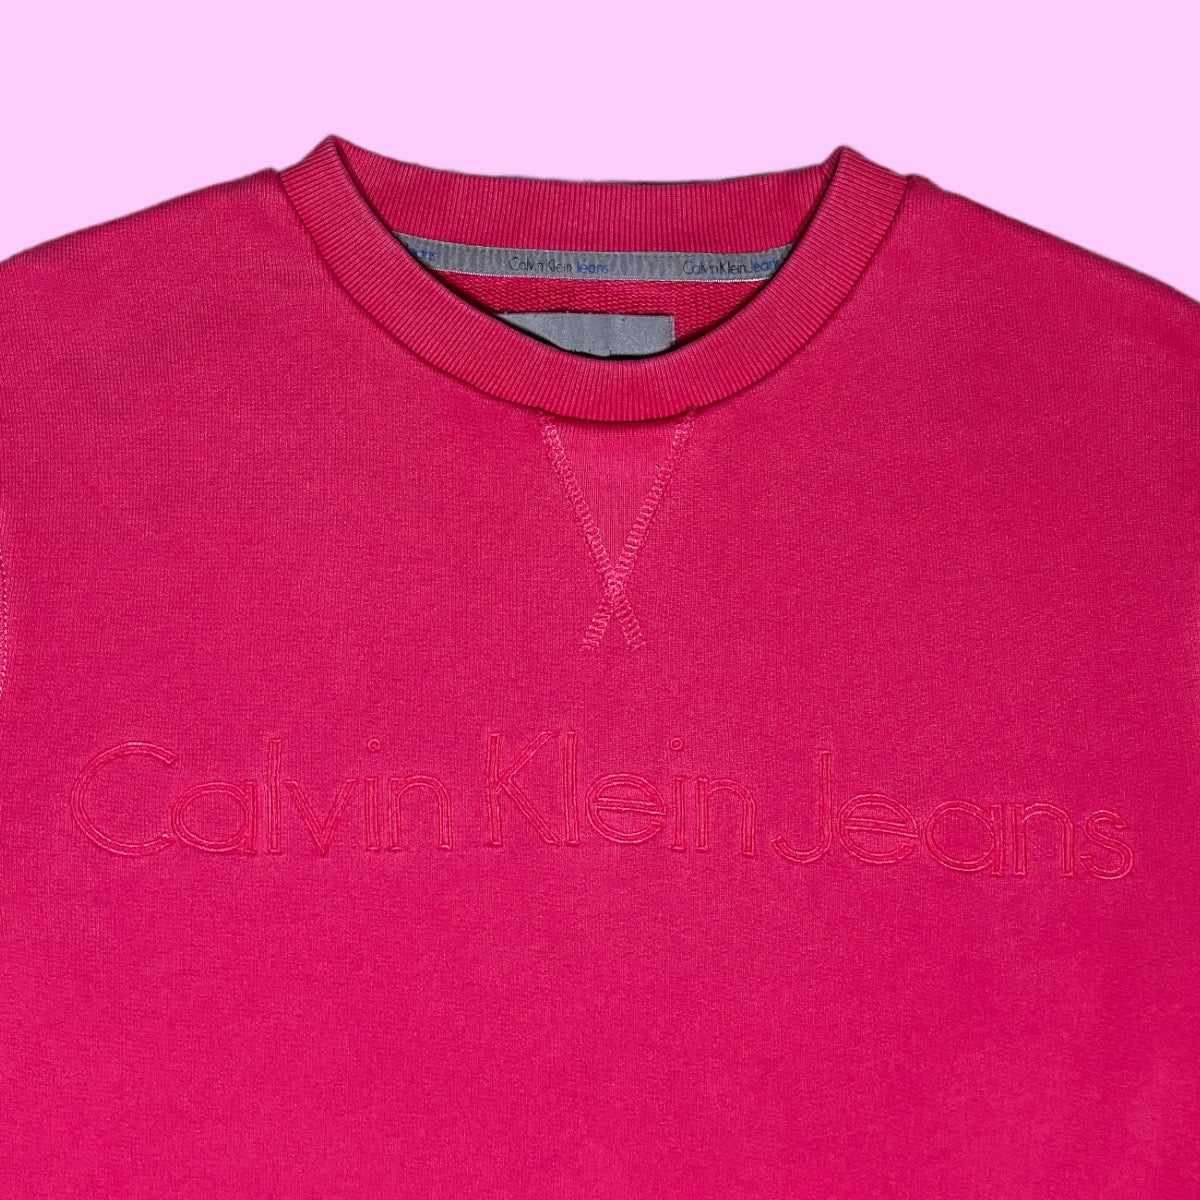 Vintage Calvin Klein sweater - M